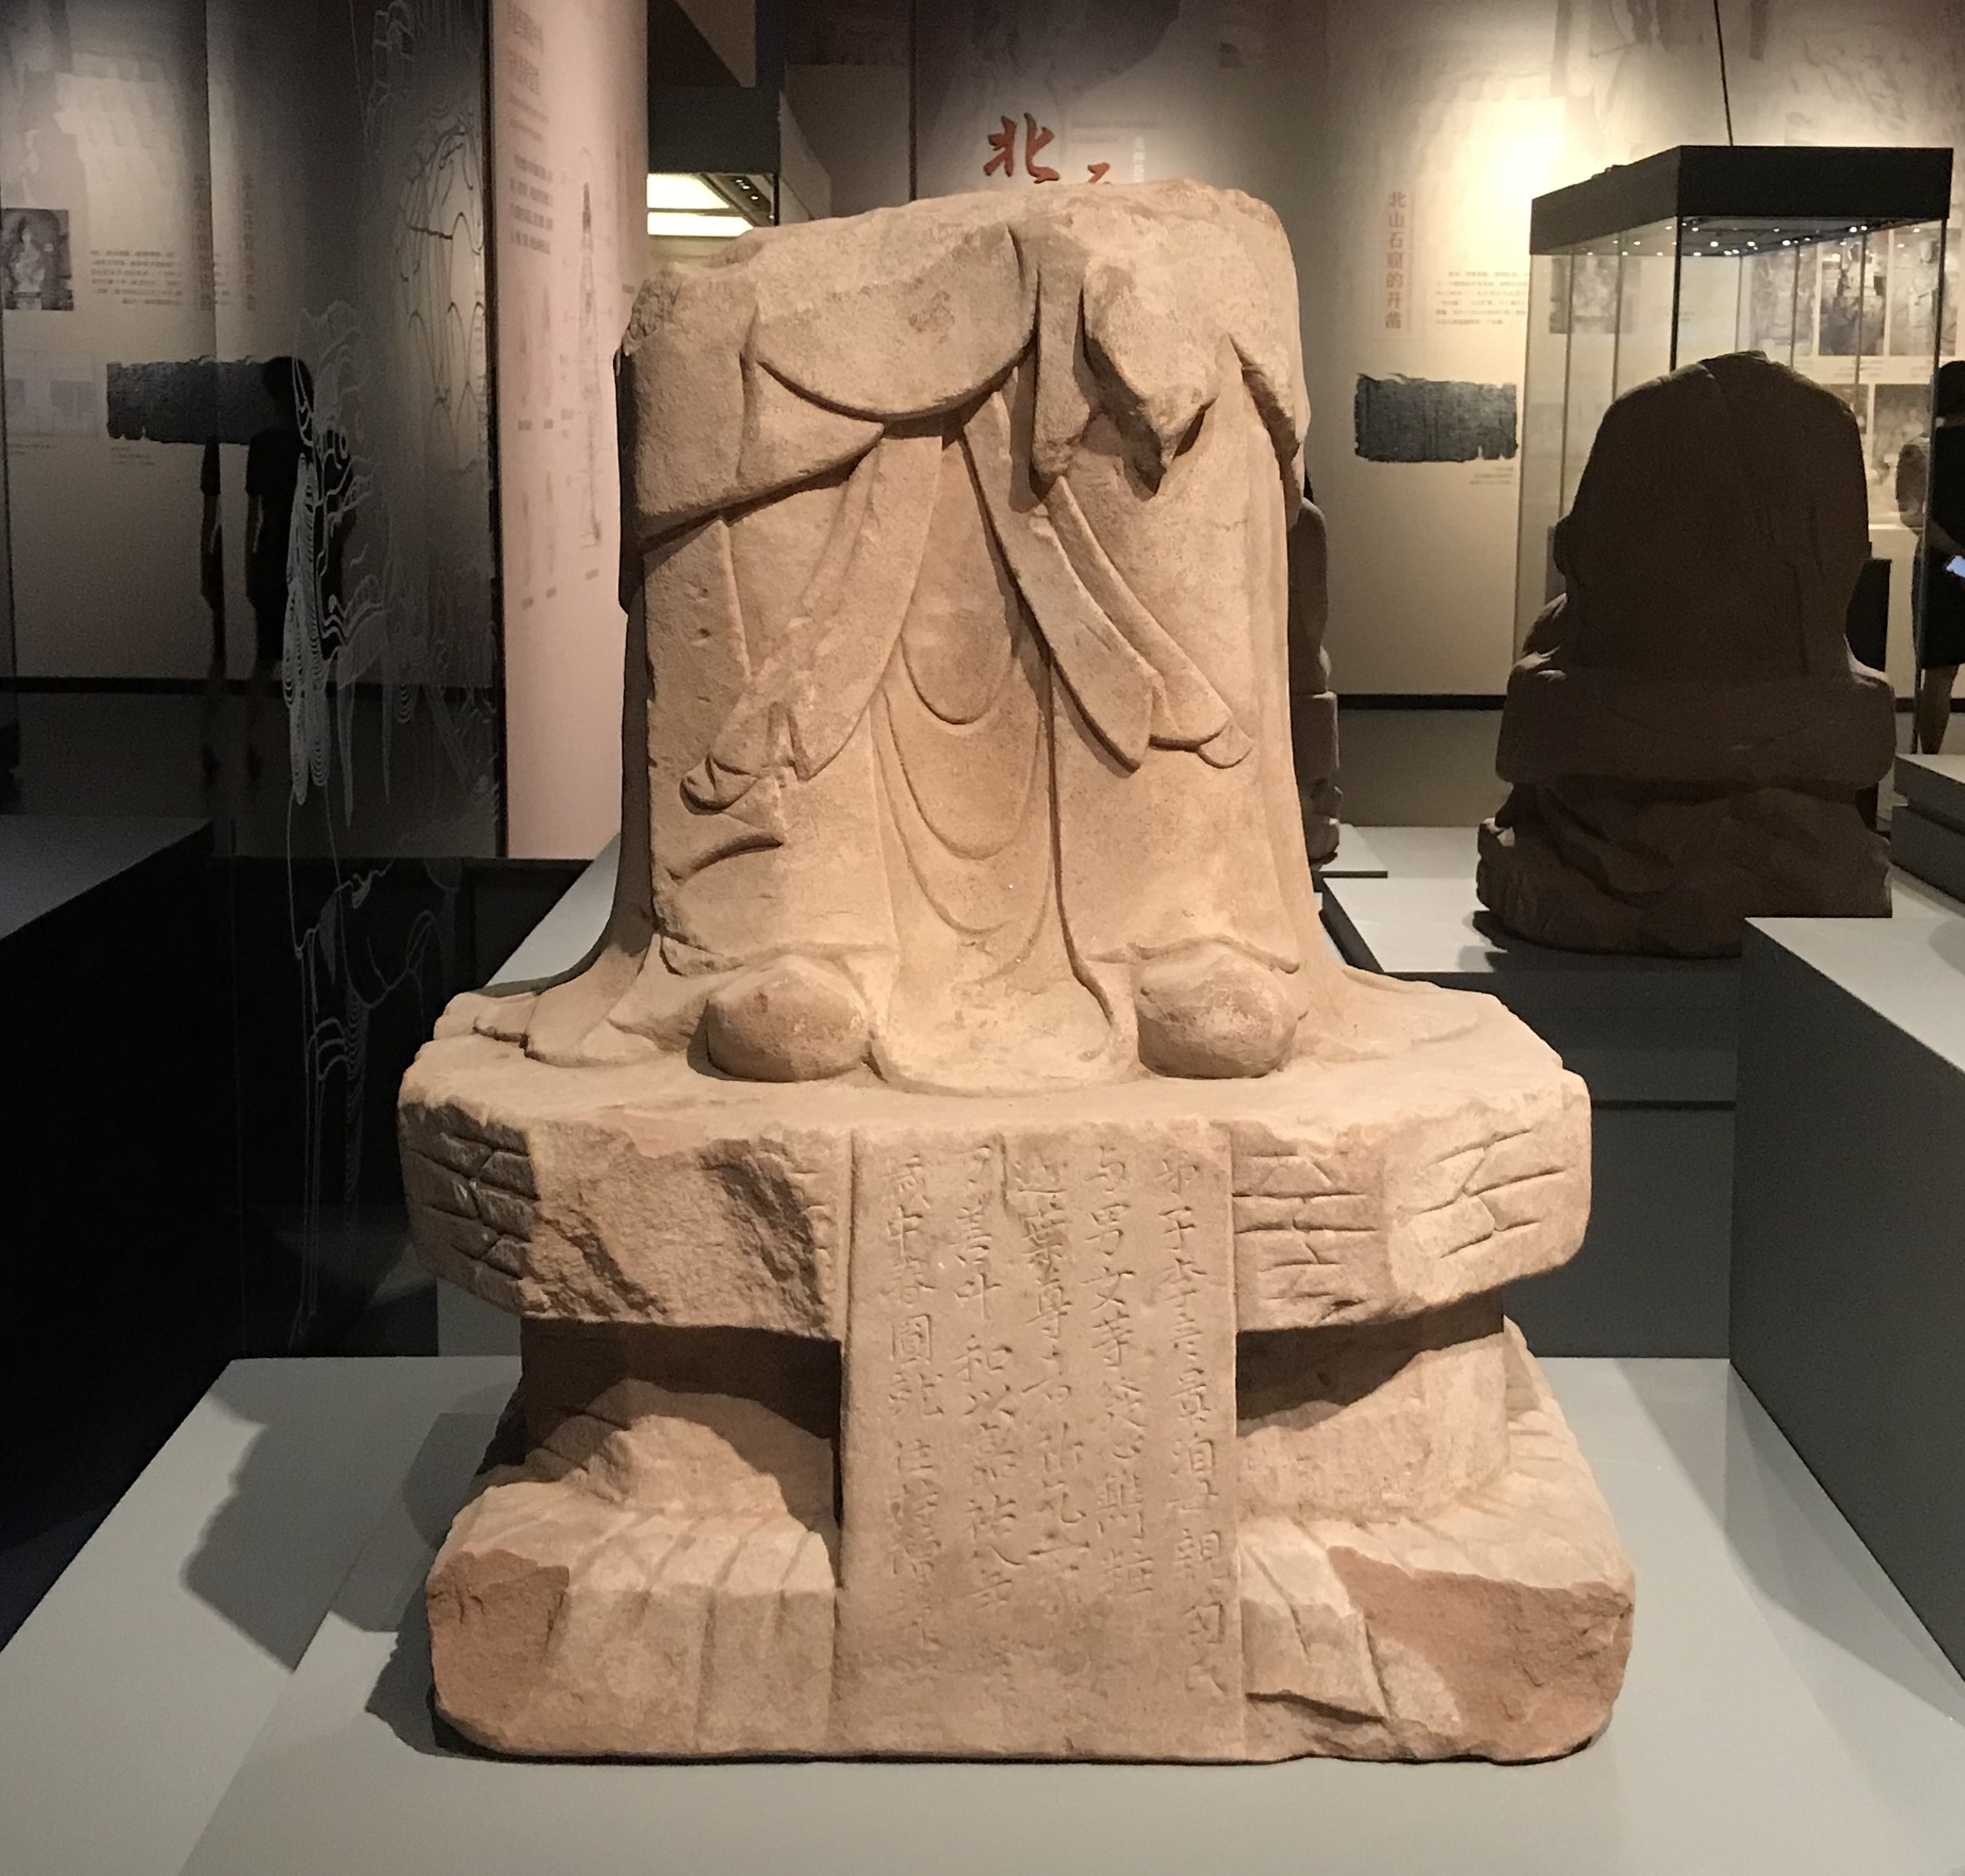 迦葉尊者残像-北宋-天下の大足-大足石刻の発見と継承-金沙遺跡博物館-成都